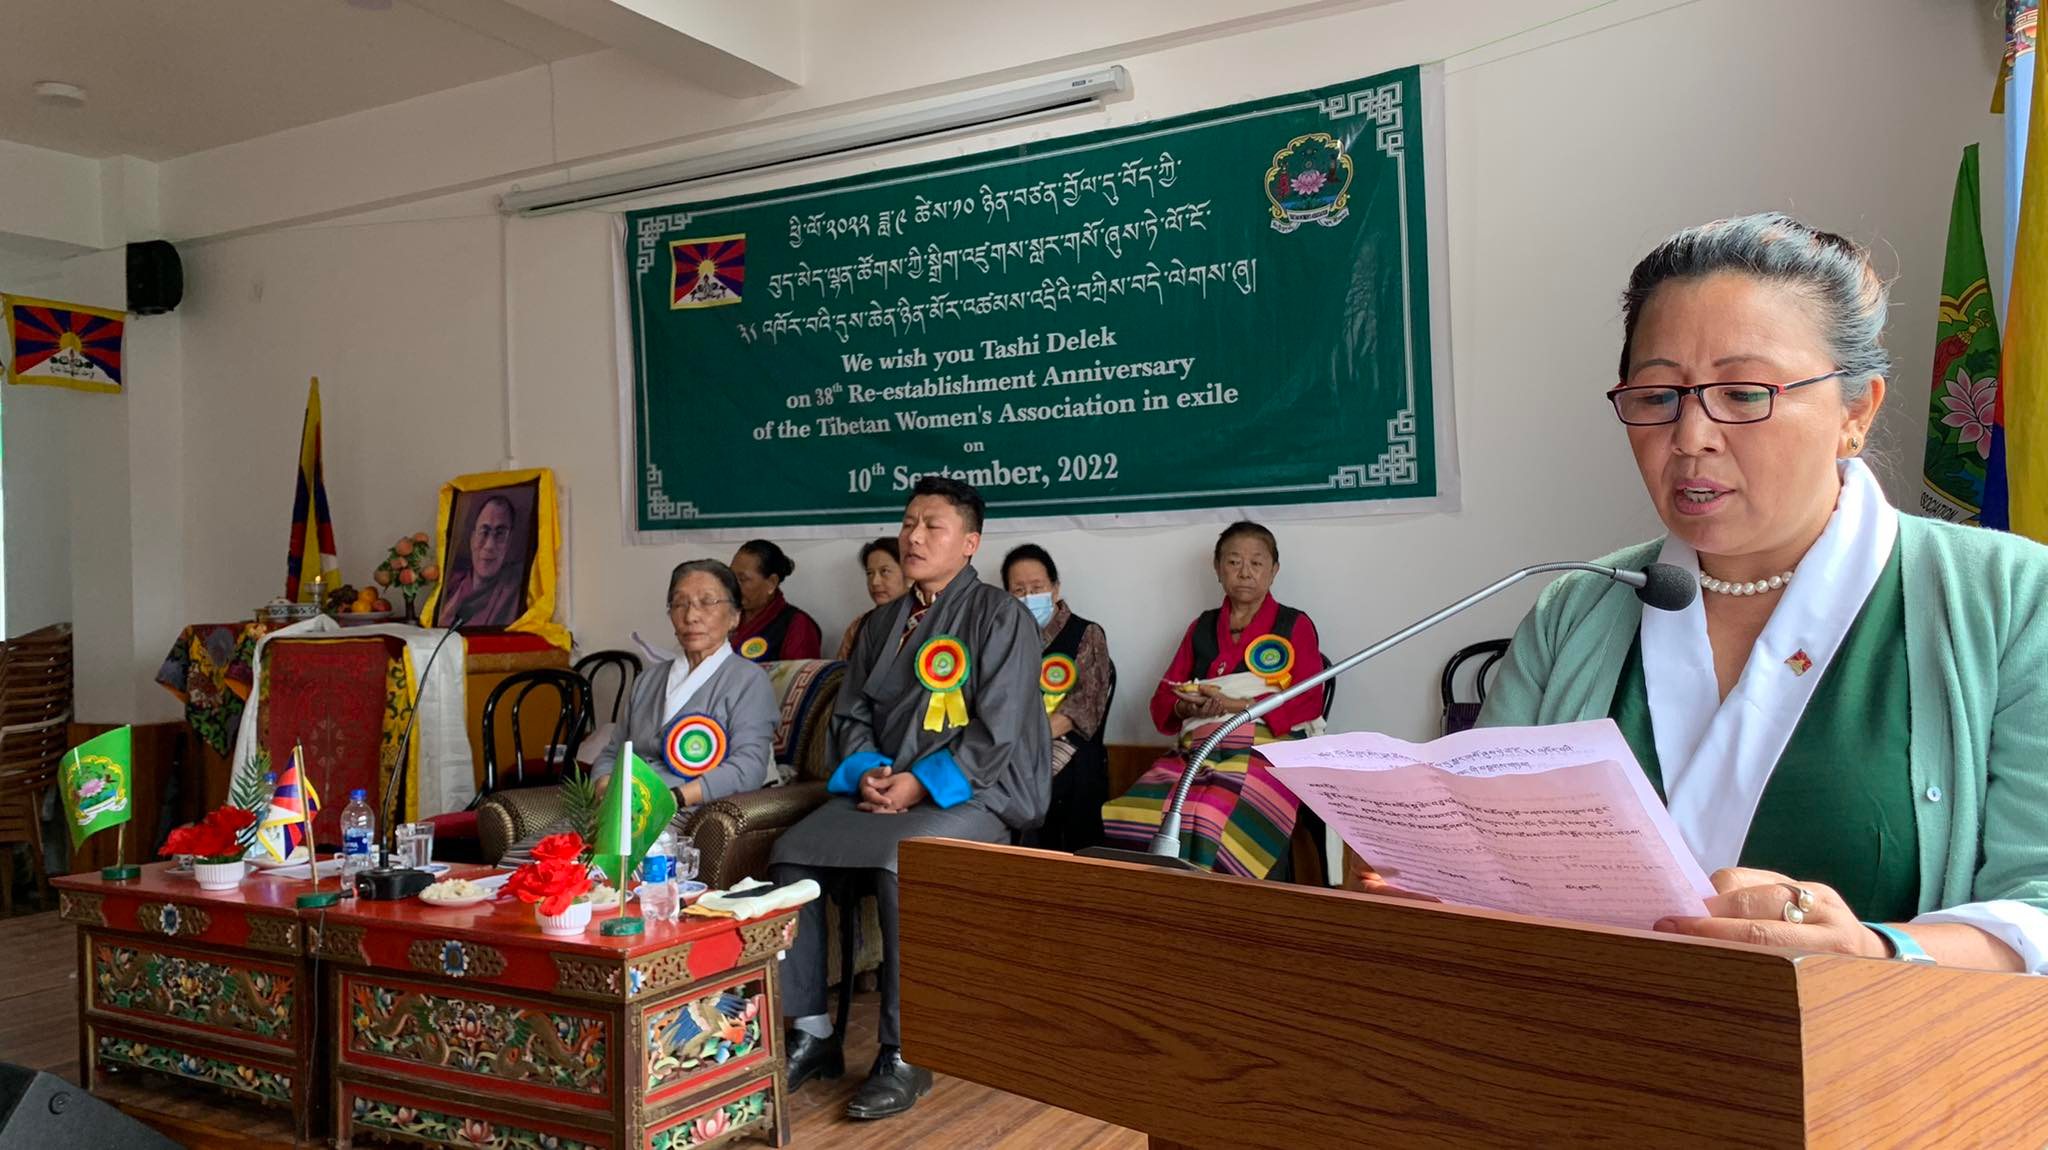 西藏妇女会举办活动纪念该团体在印度重建38周年